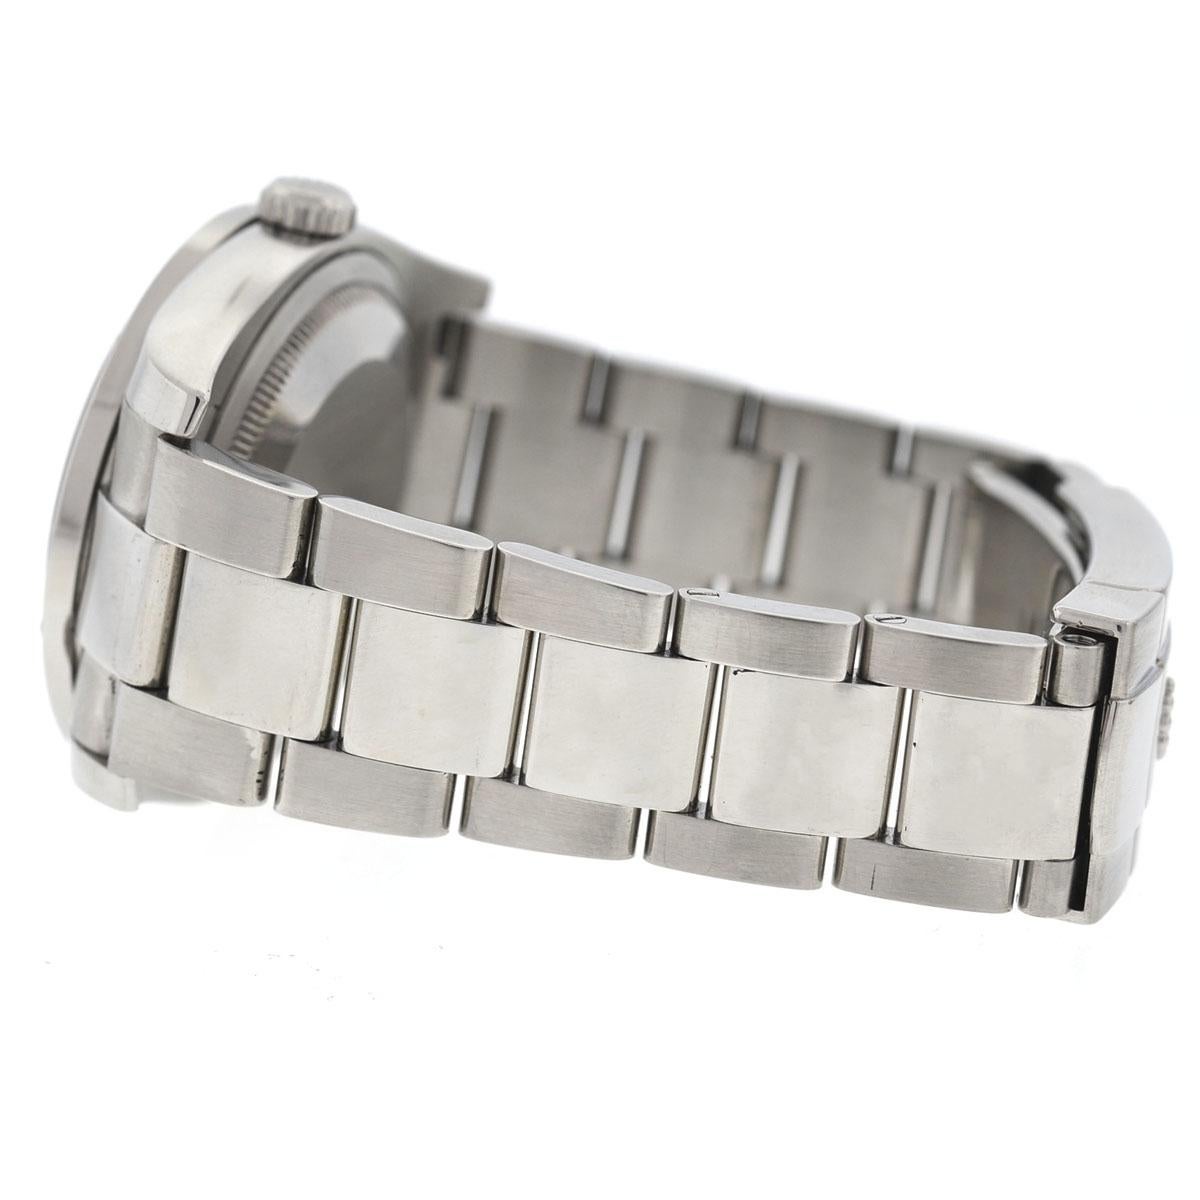 Rolex 116200 Datejust MOP Diamond Dial Diamond Bezel Stainless Steel Watch 1